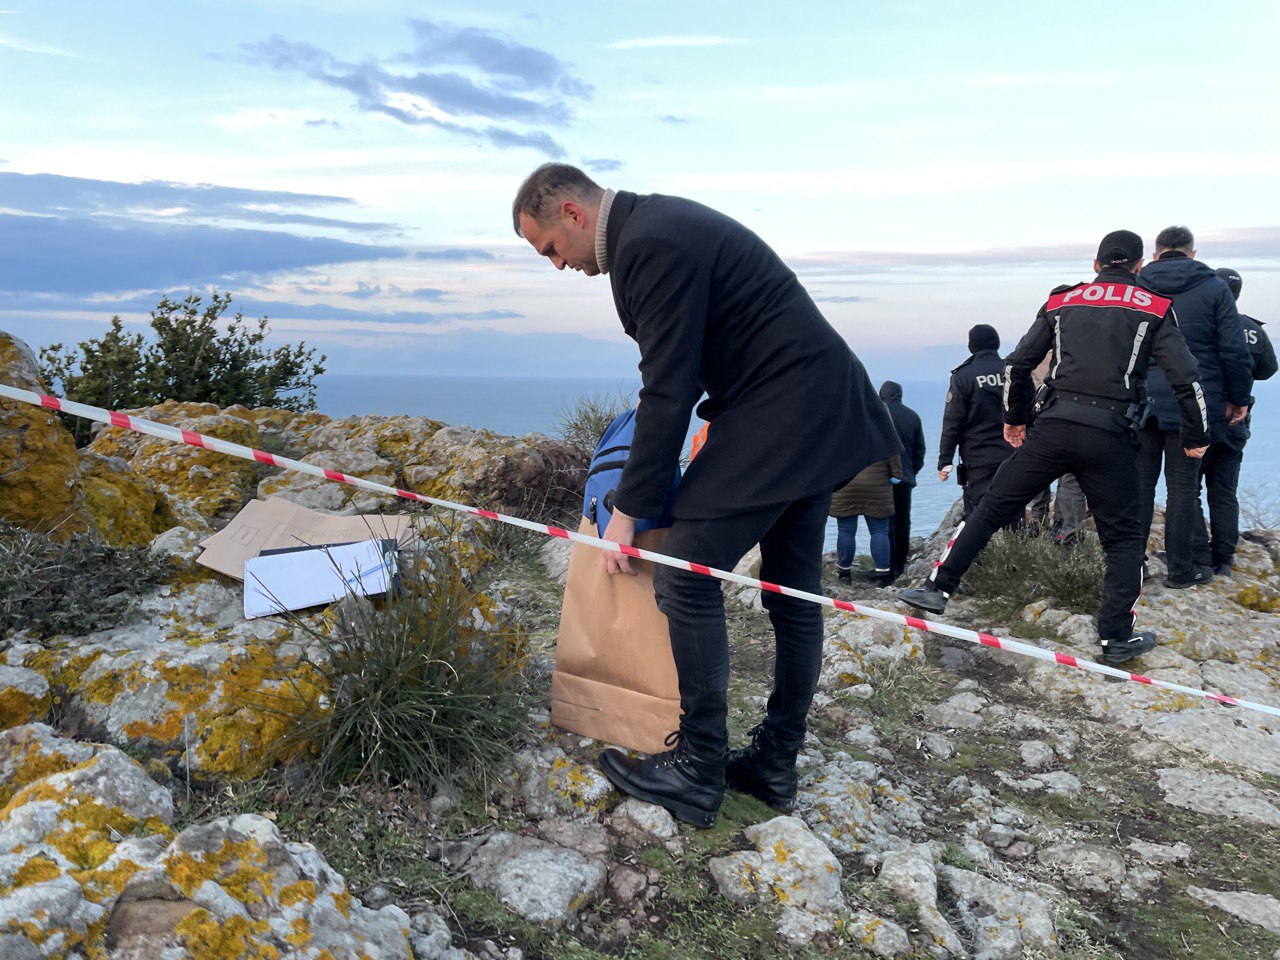 Sinop’ta uçurumda cesedi bulunan kadının kimliği belirlendi